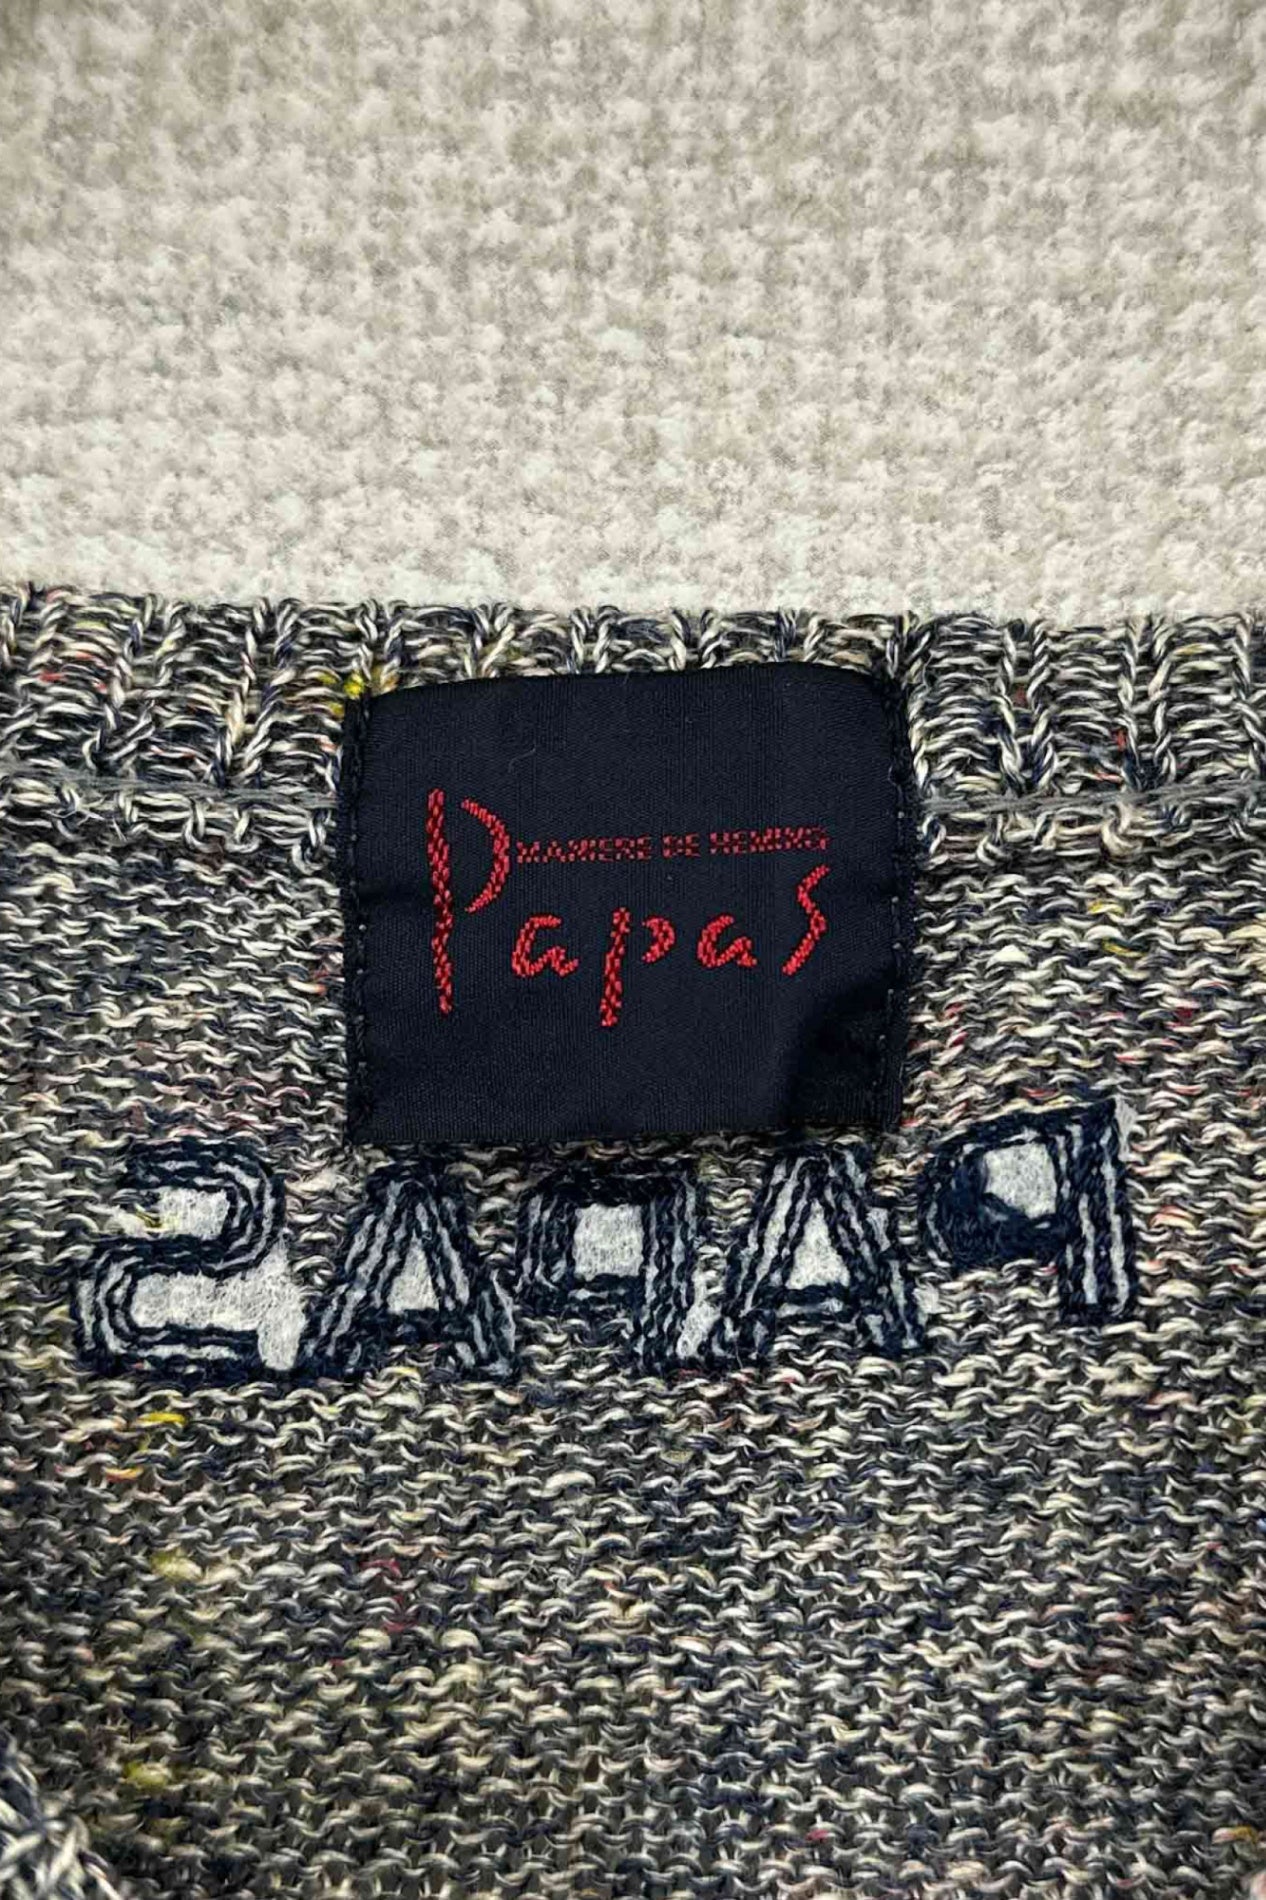 Papa's knit vest